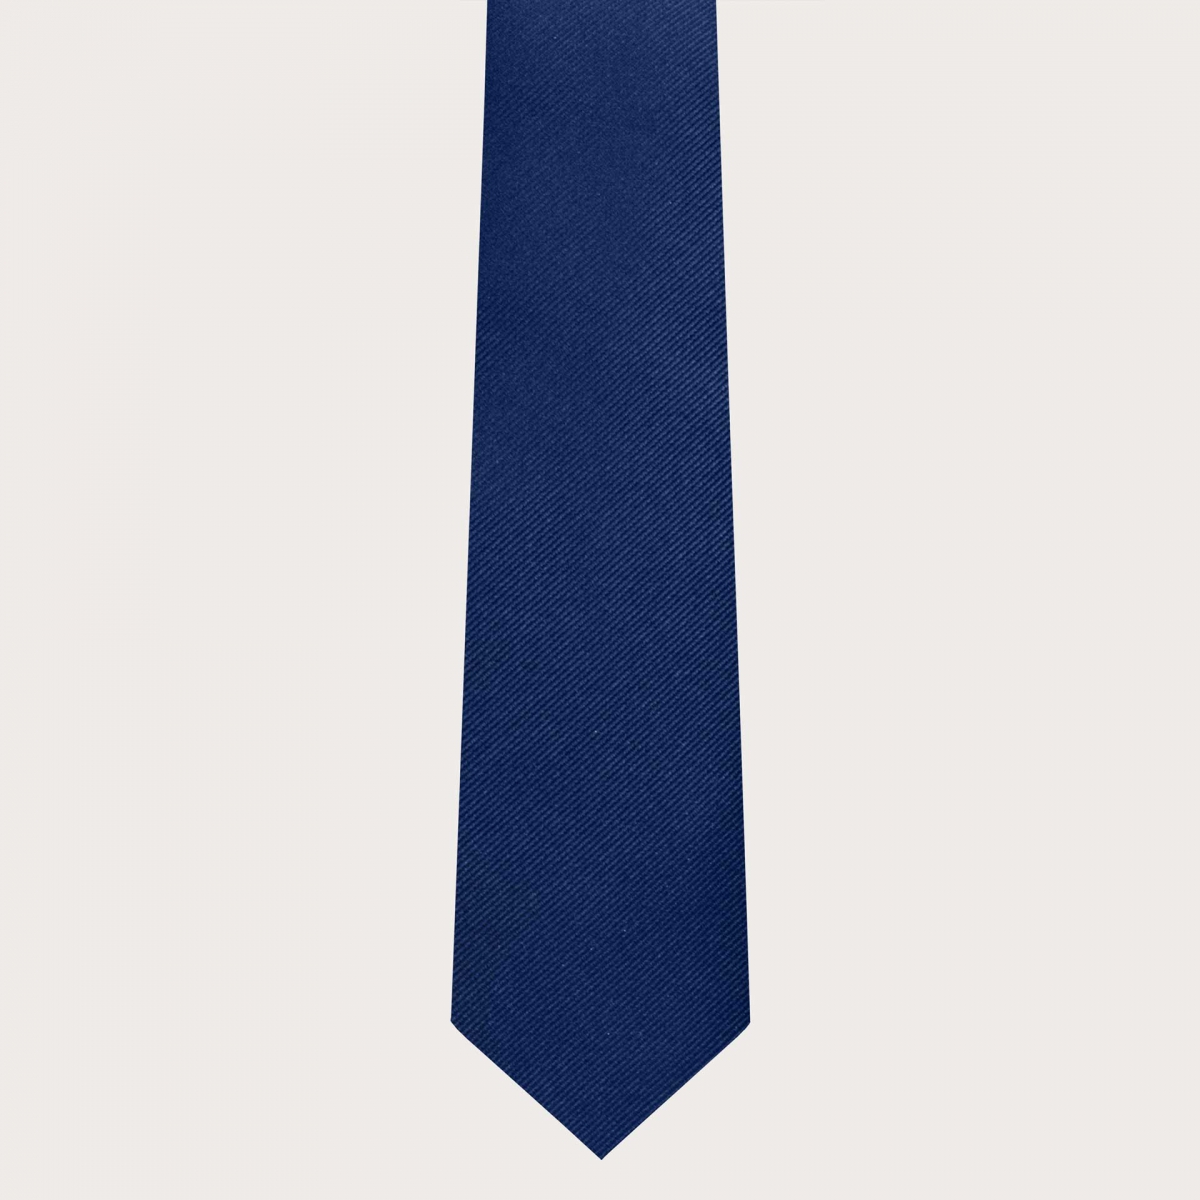 Bretelle e cravatta coordinate in seta jacquard blu